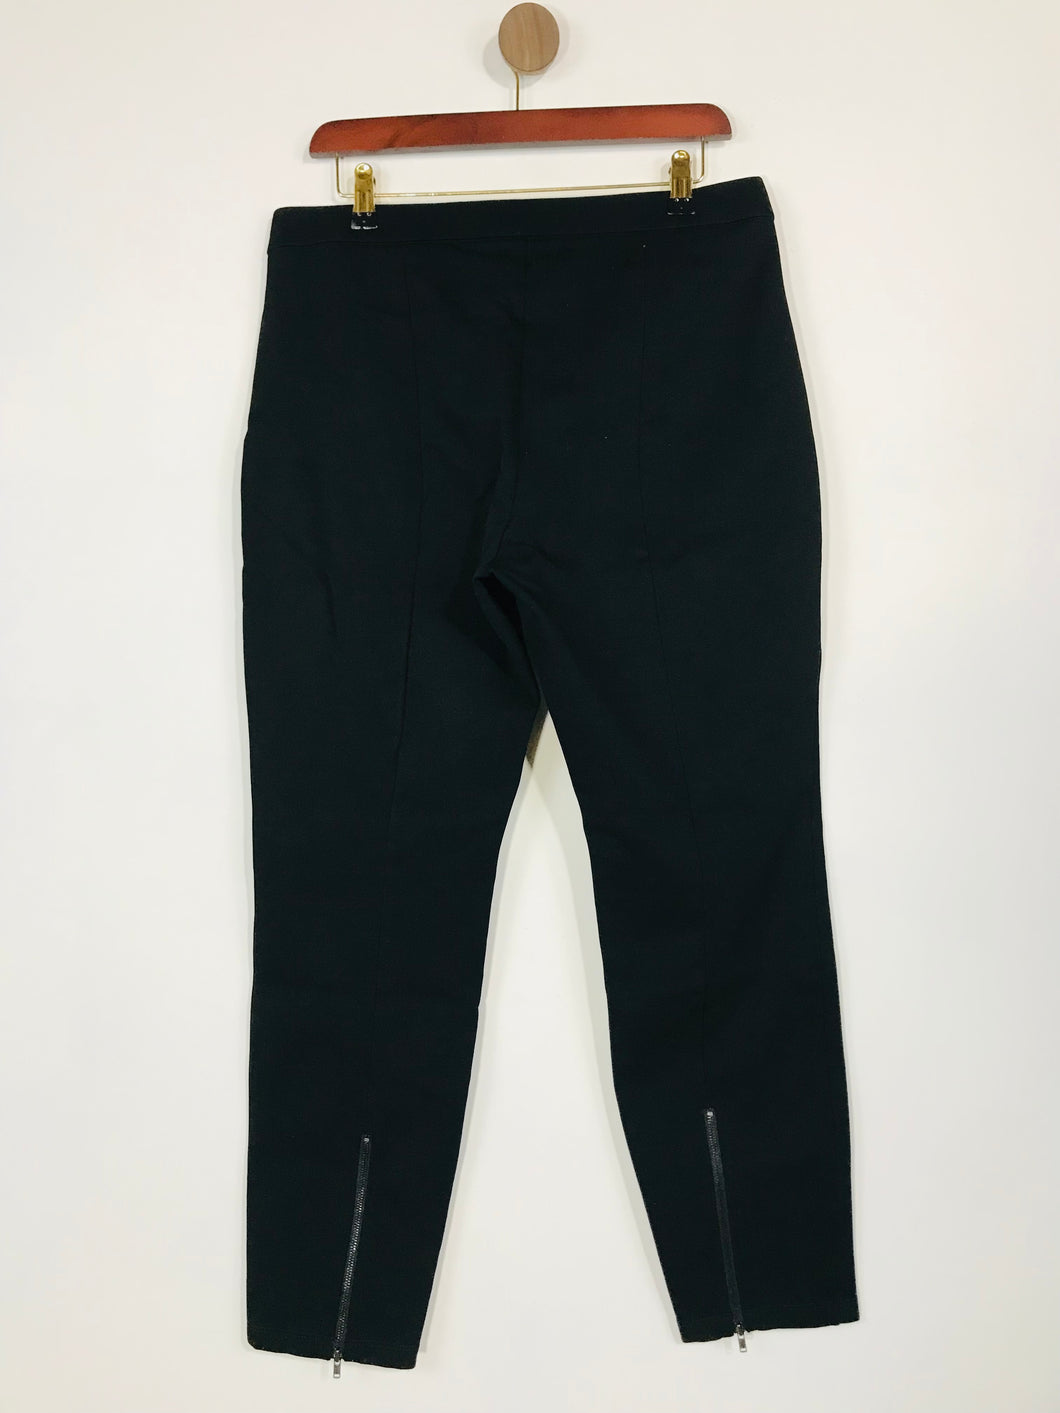 Eileen Fisher Women's Smart Trousers | M UK10-12 | Black